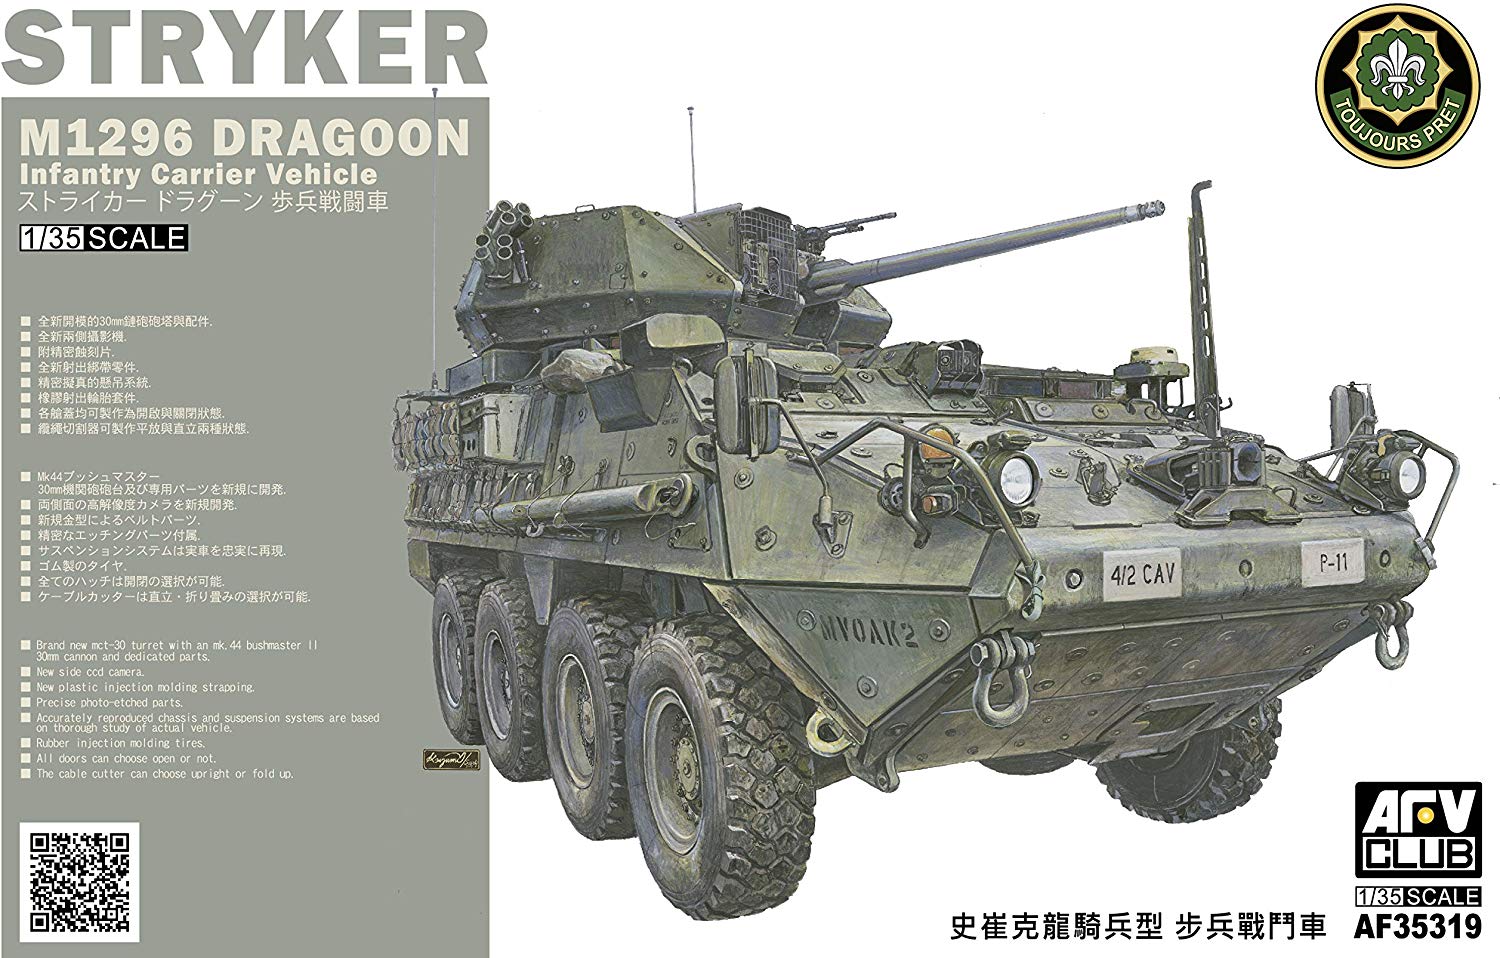 1/35『M1296 ストライカードラグーン 歩兵戦闘車』プラモデル-001